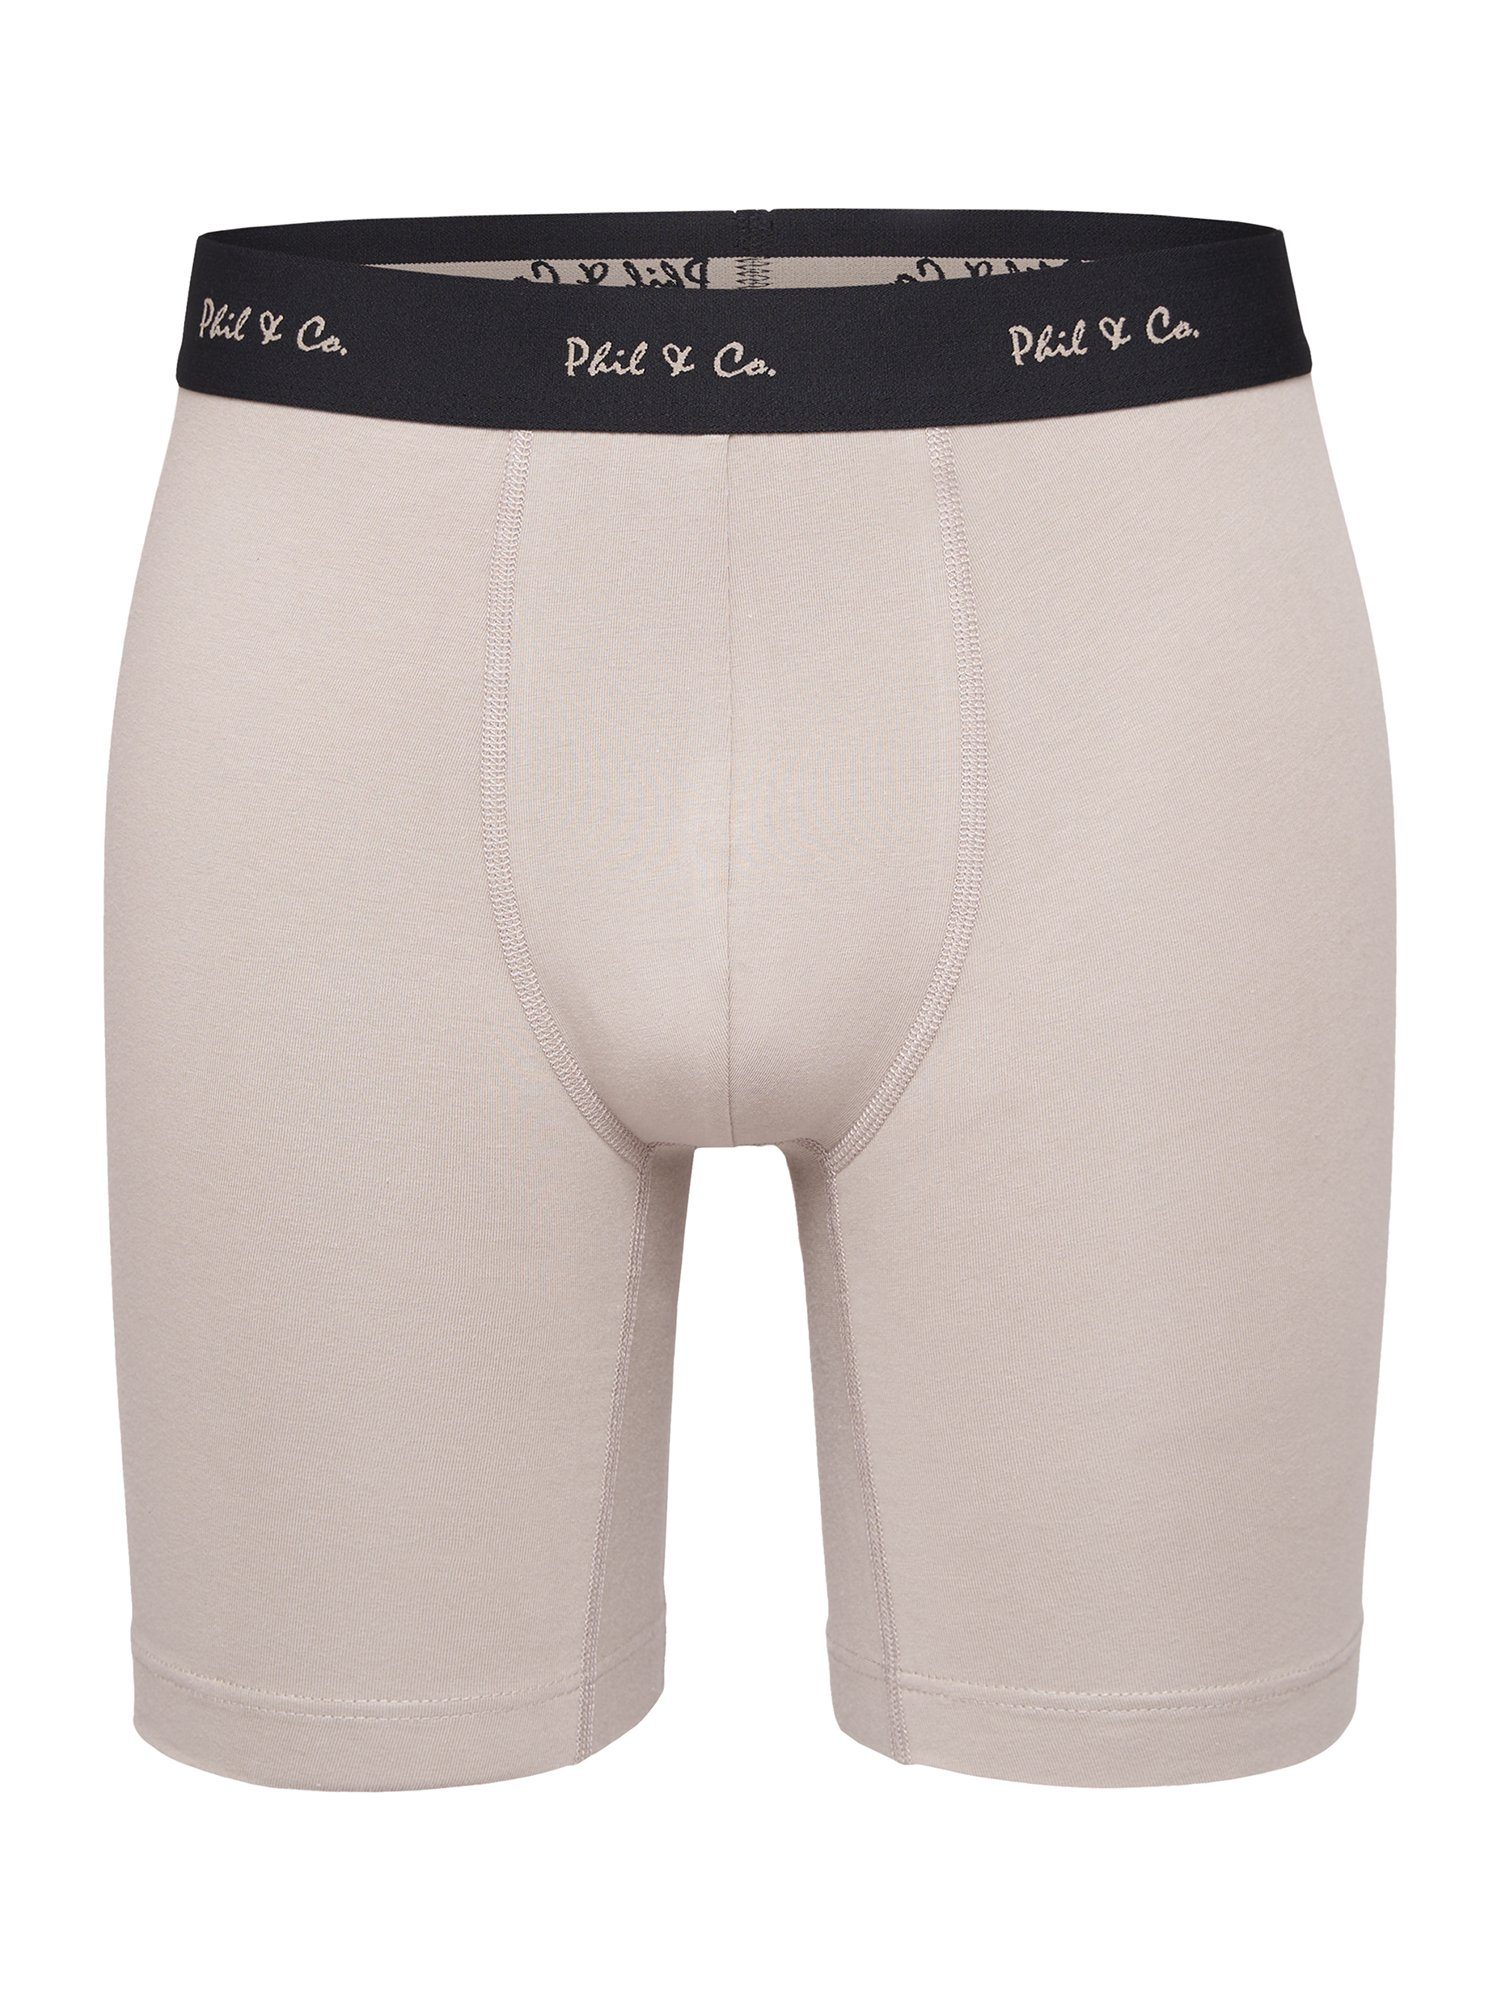 Phil & Co. Langer Boxer Long black Boxer white beige Unterhose (3-St) Retro-Shorts Boxer-Brief Jersey